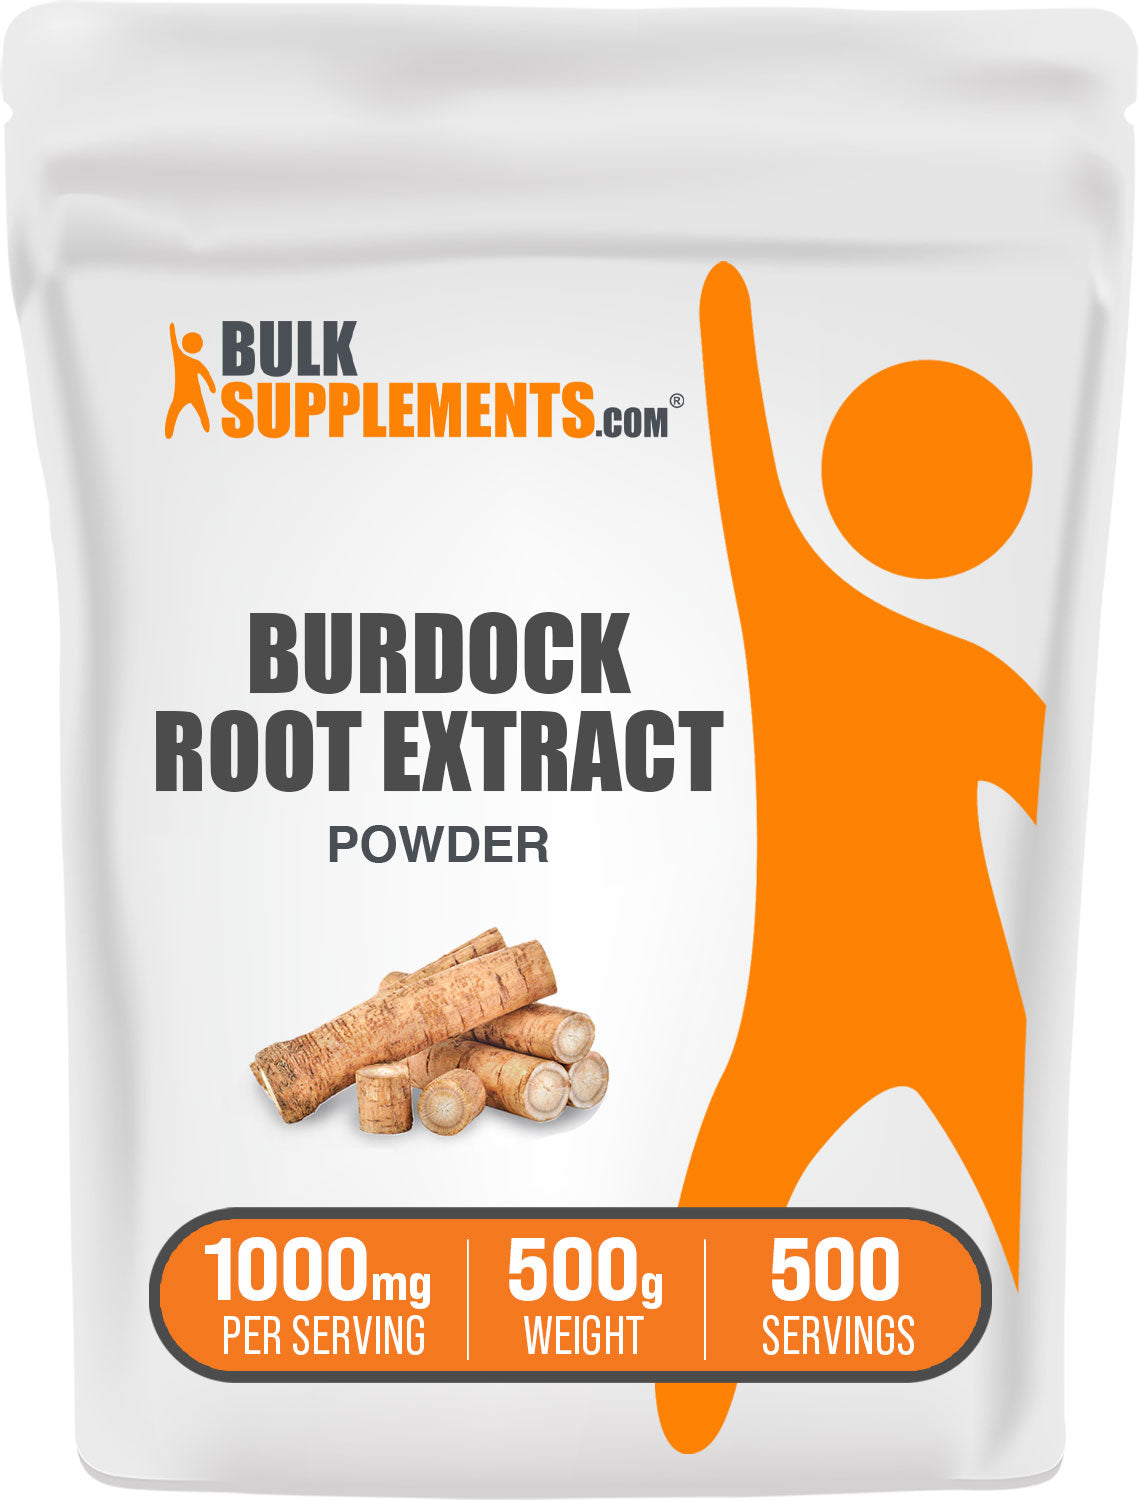 500g of burdock root